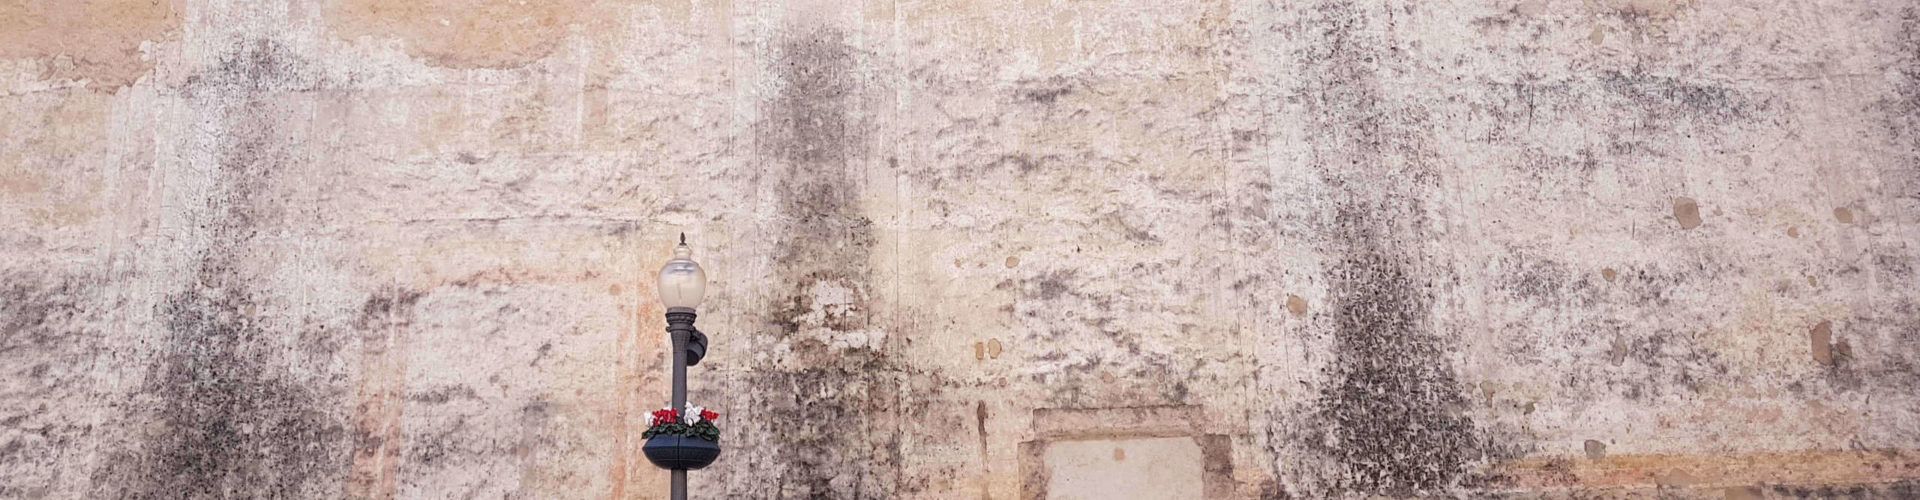 La Conselleria pide al Obispado de Tortosa que restaure las pinturas exteriores de la Arciprestal de Vinaròs